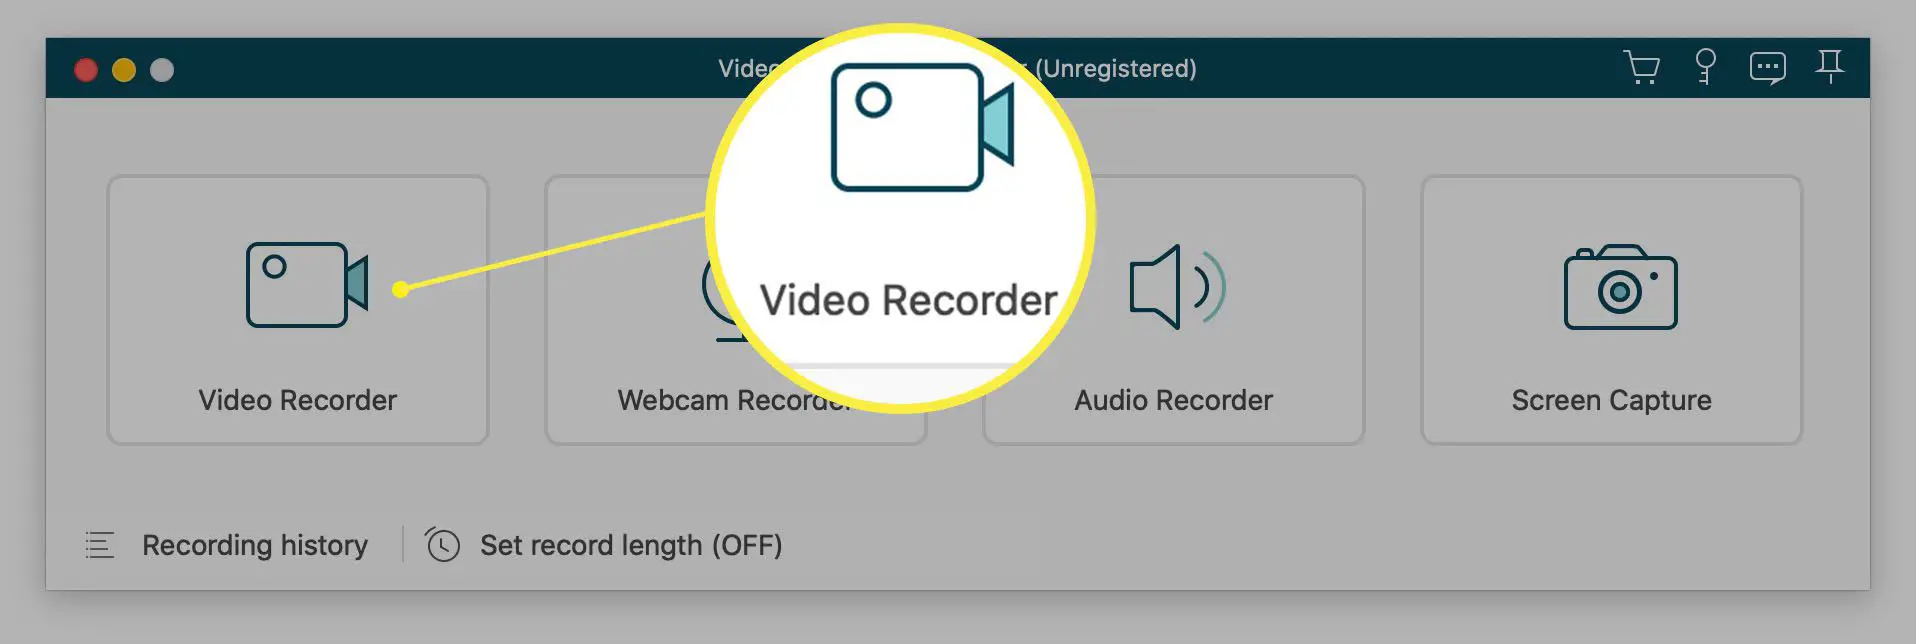 Aplicativo VideoSolo com opção de gravador de vídeo destacada